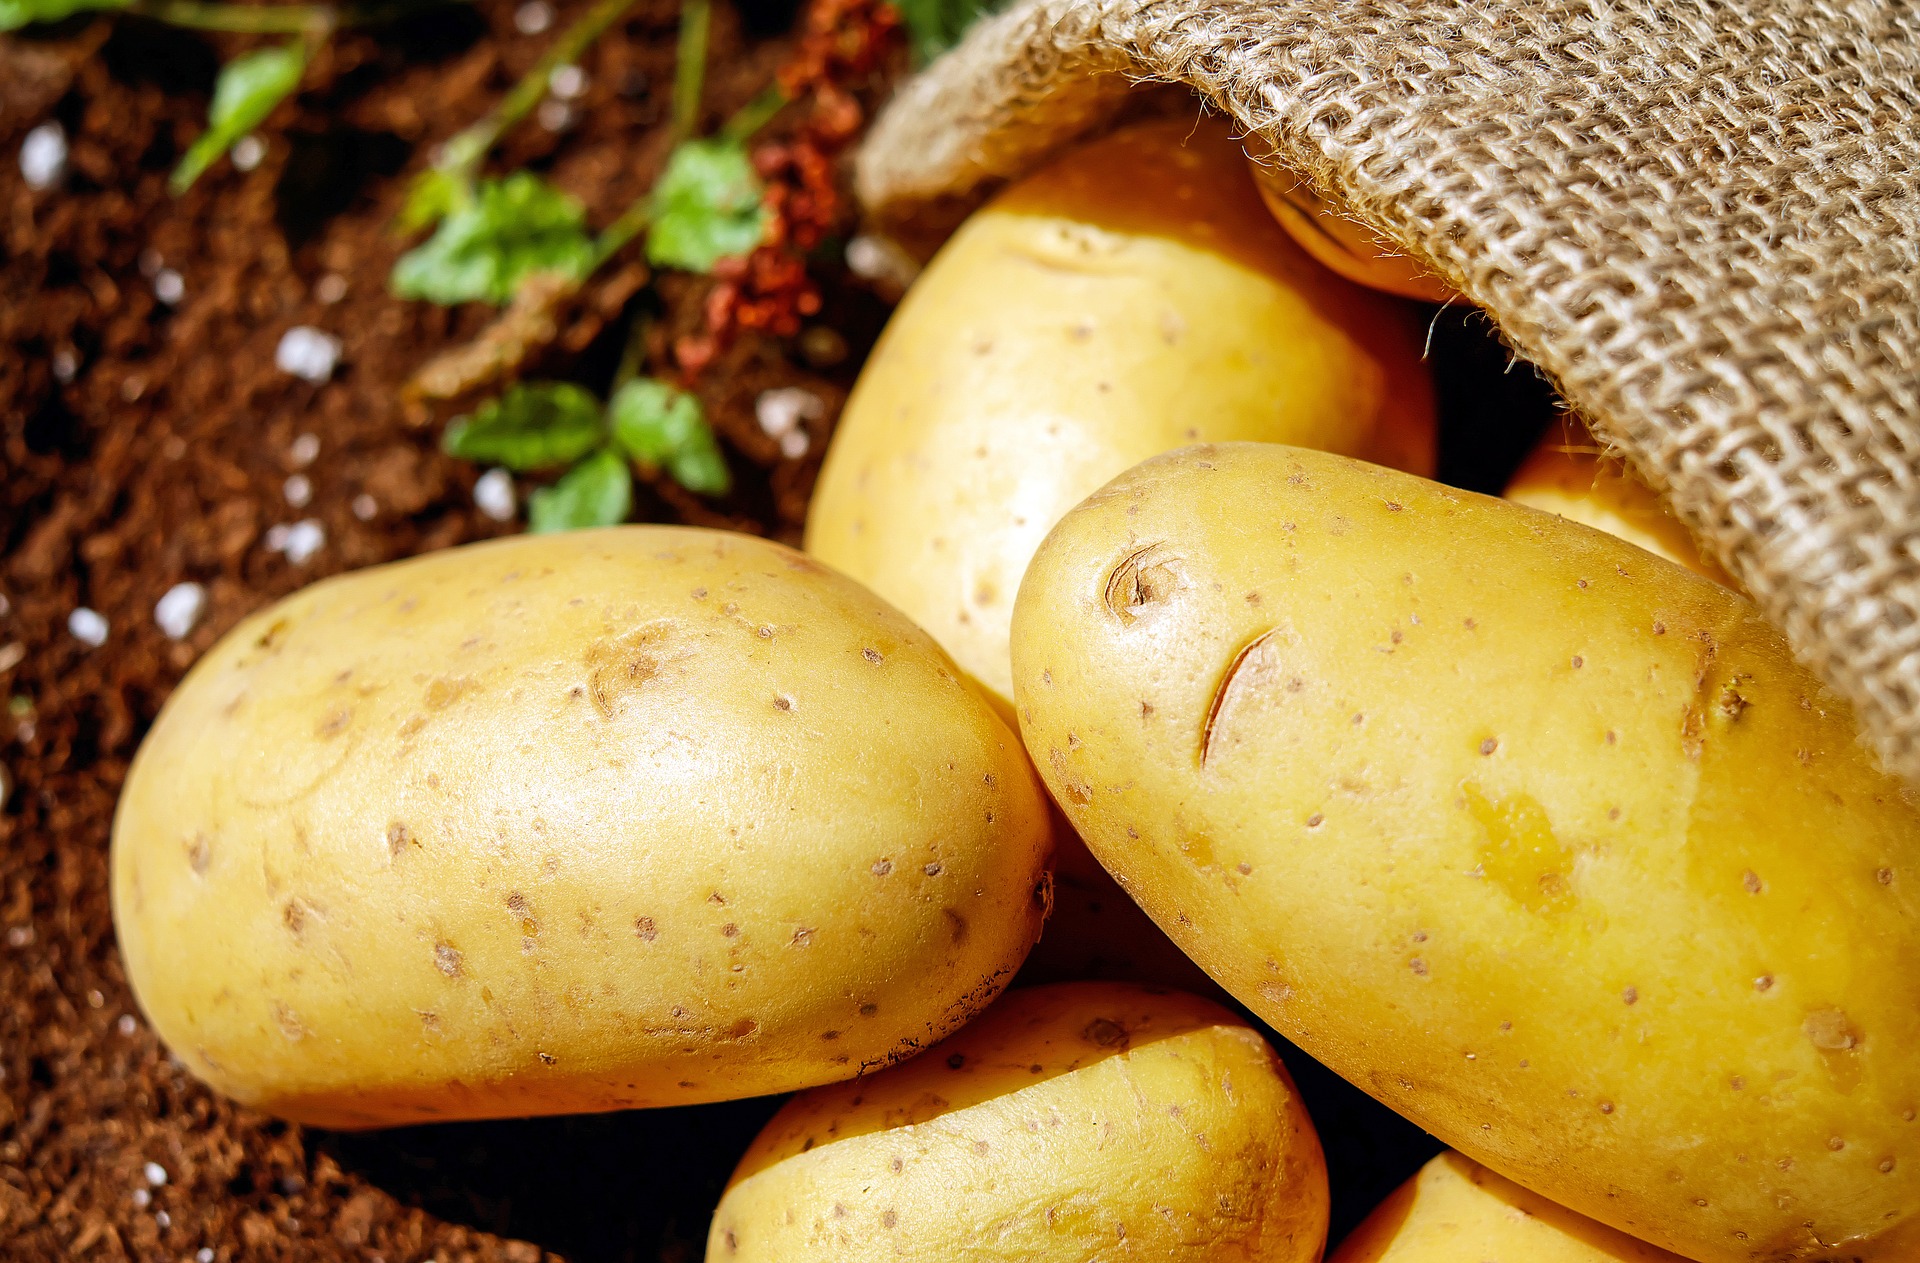 馬鈴薯 薯仔 儲存方法 蔬果貯存